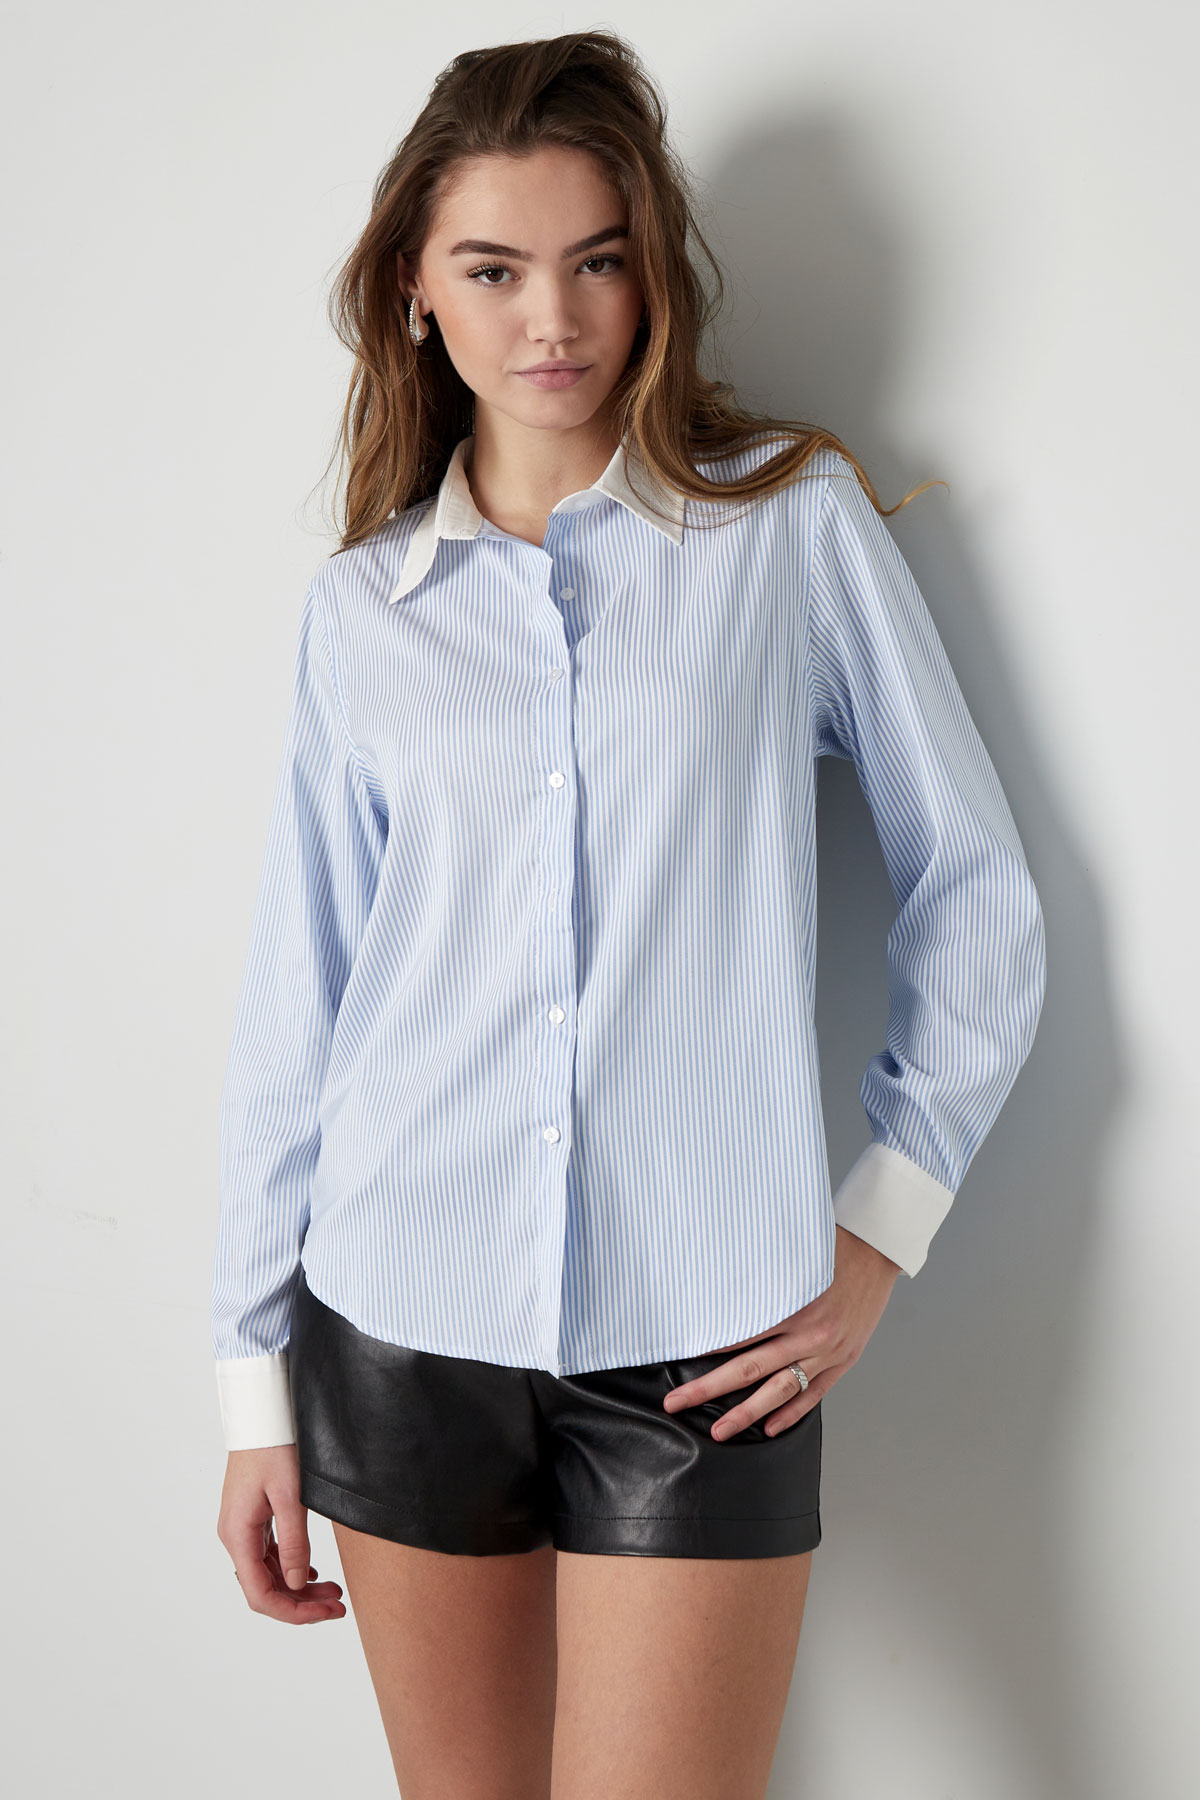 Temel bluz şeritleri - beyaz/pembe Resim2